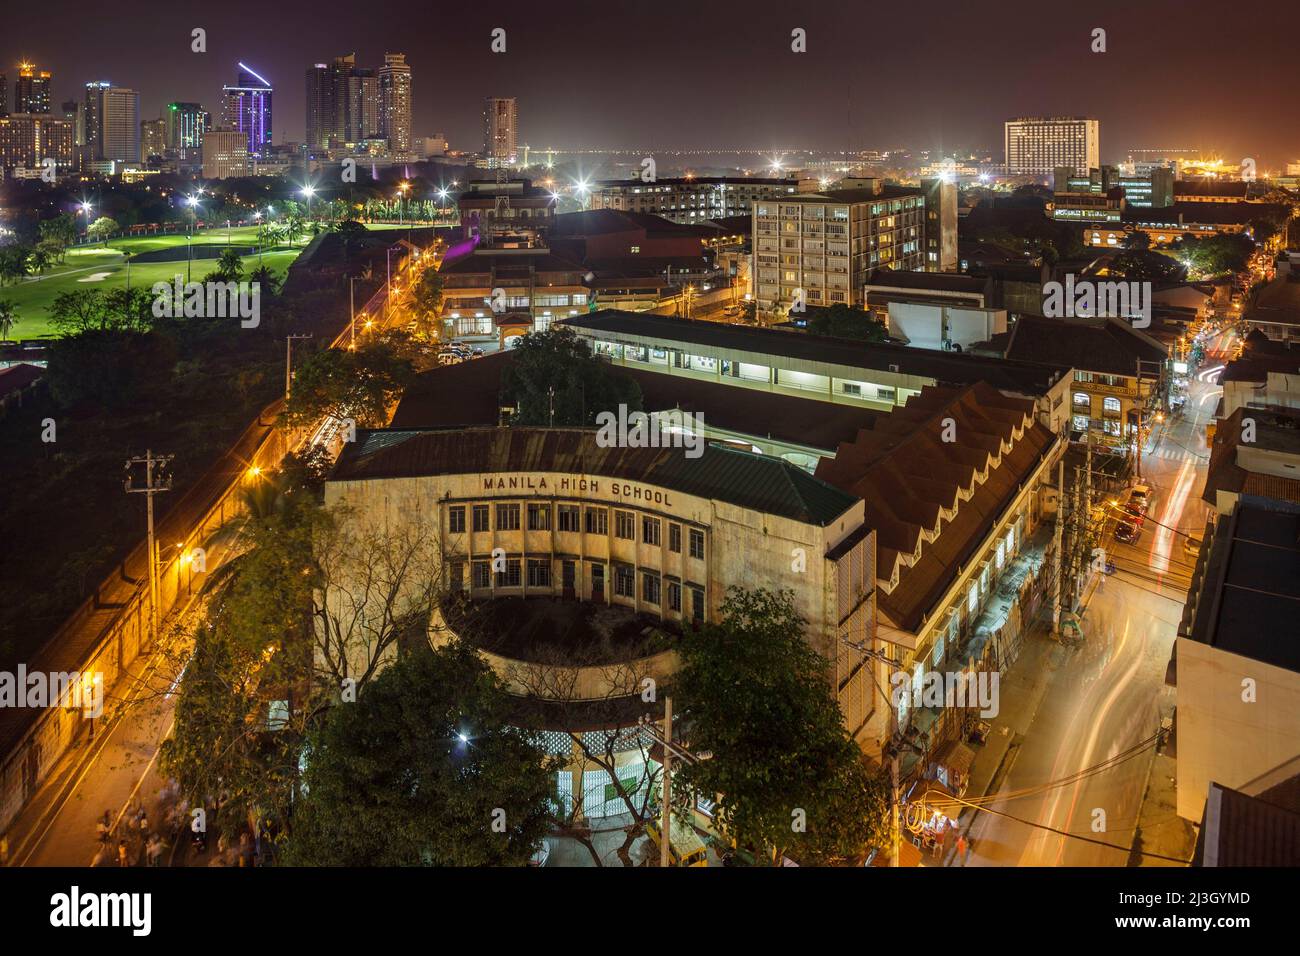 Filippine, Metro Manila, Intramuros, vista dal Bayleaf Hotel, vista elevata della Manila High School, illuminata di notte, la prima scuola pubblica di Manila, aperto nel 1906 Foto Stock